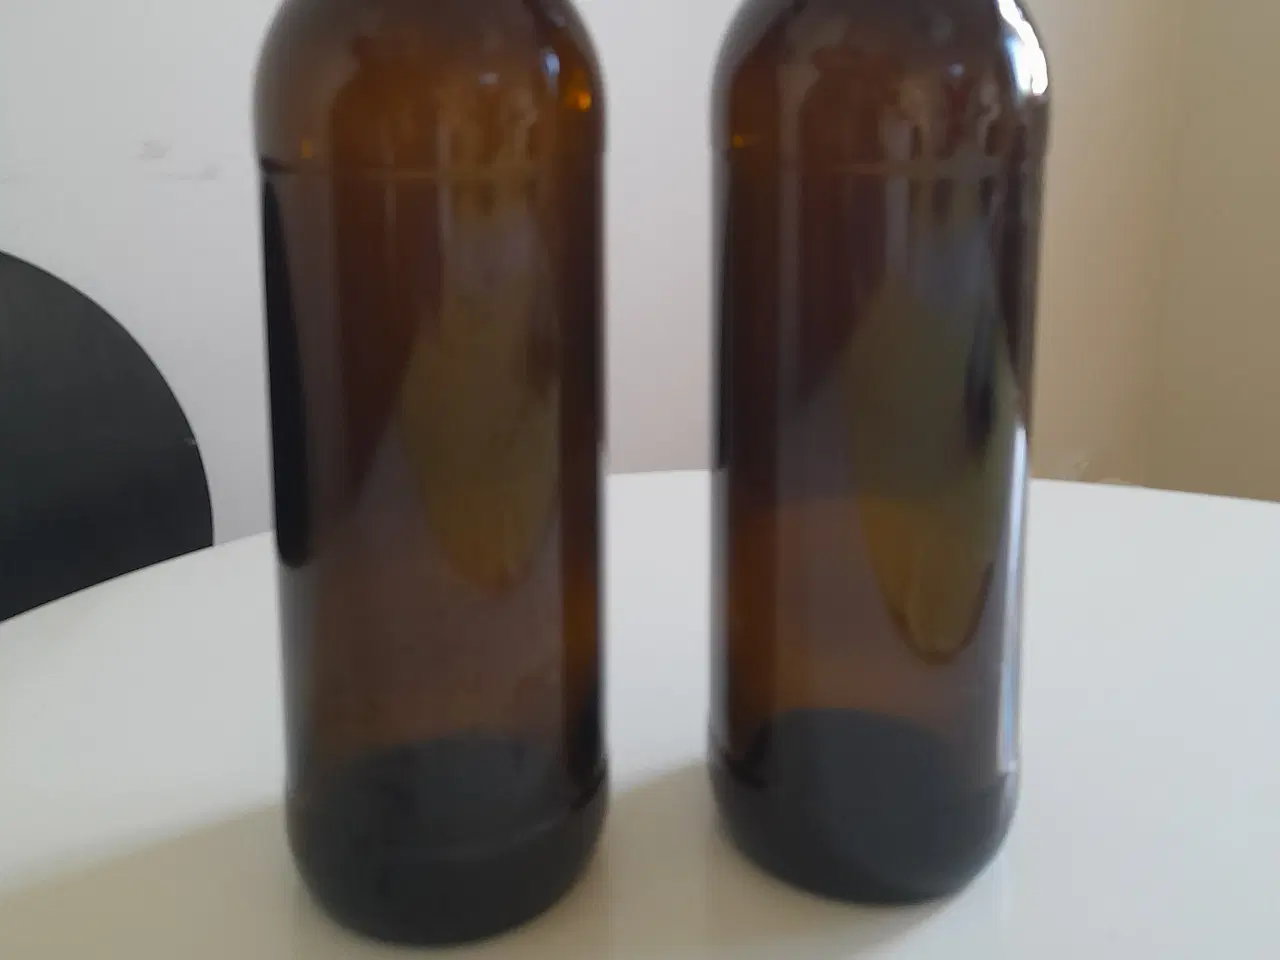 Billede 3 - Stakitøl-flaske og 2 stk. flasker med patentprop